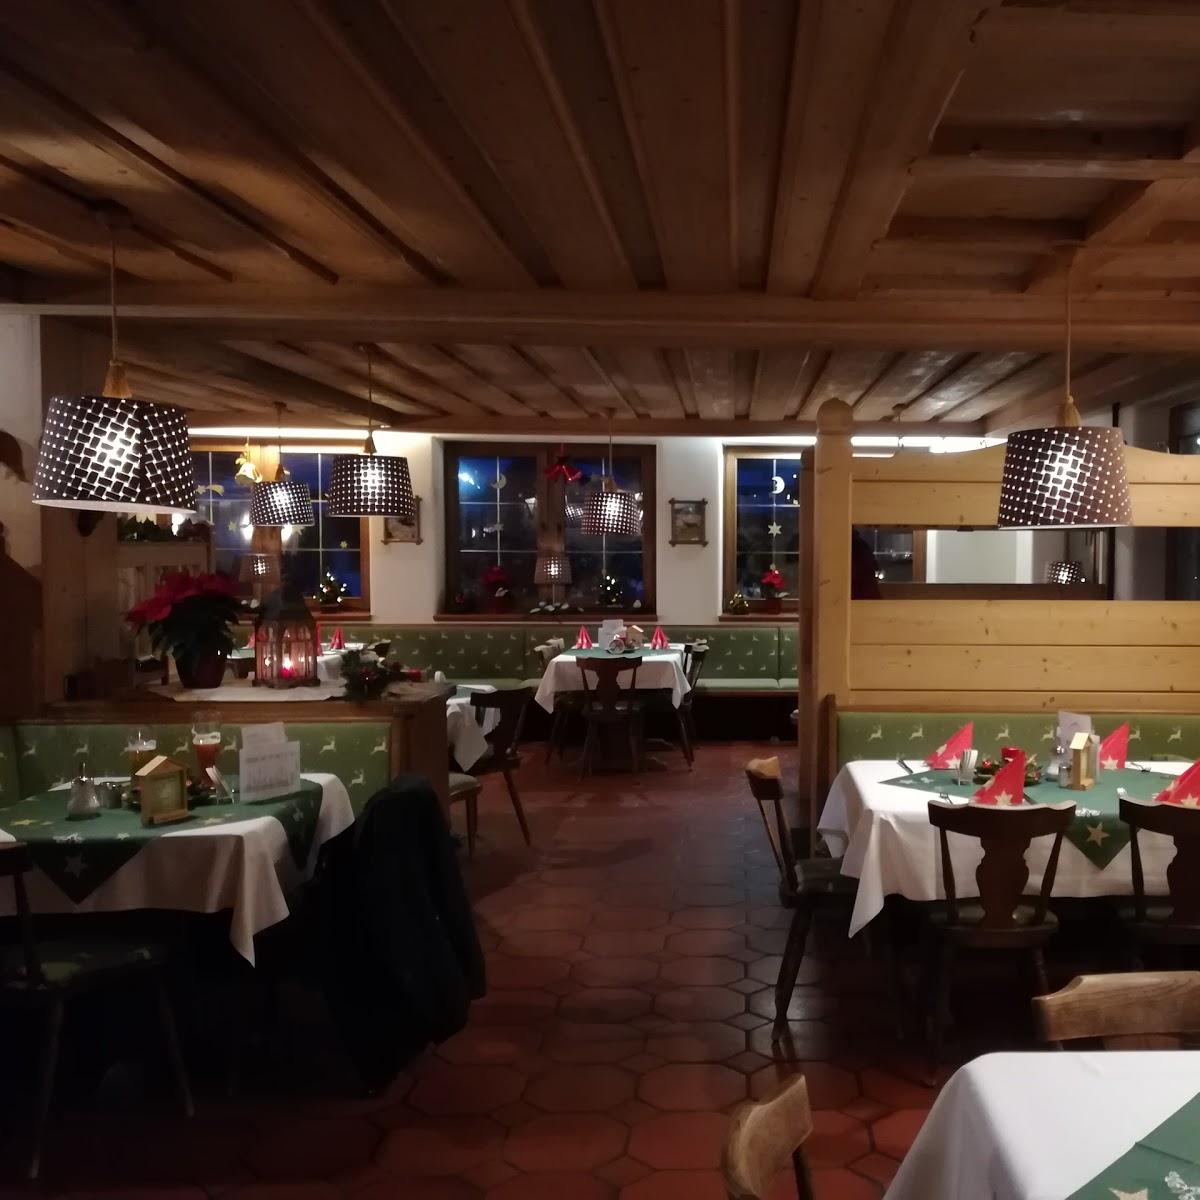 Restaurant "DEVA Hotel-Restaurant Fischerwirt" in Ruhpolding